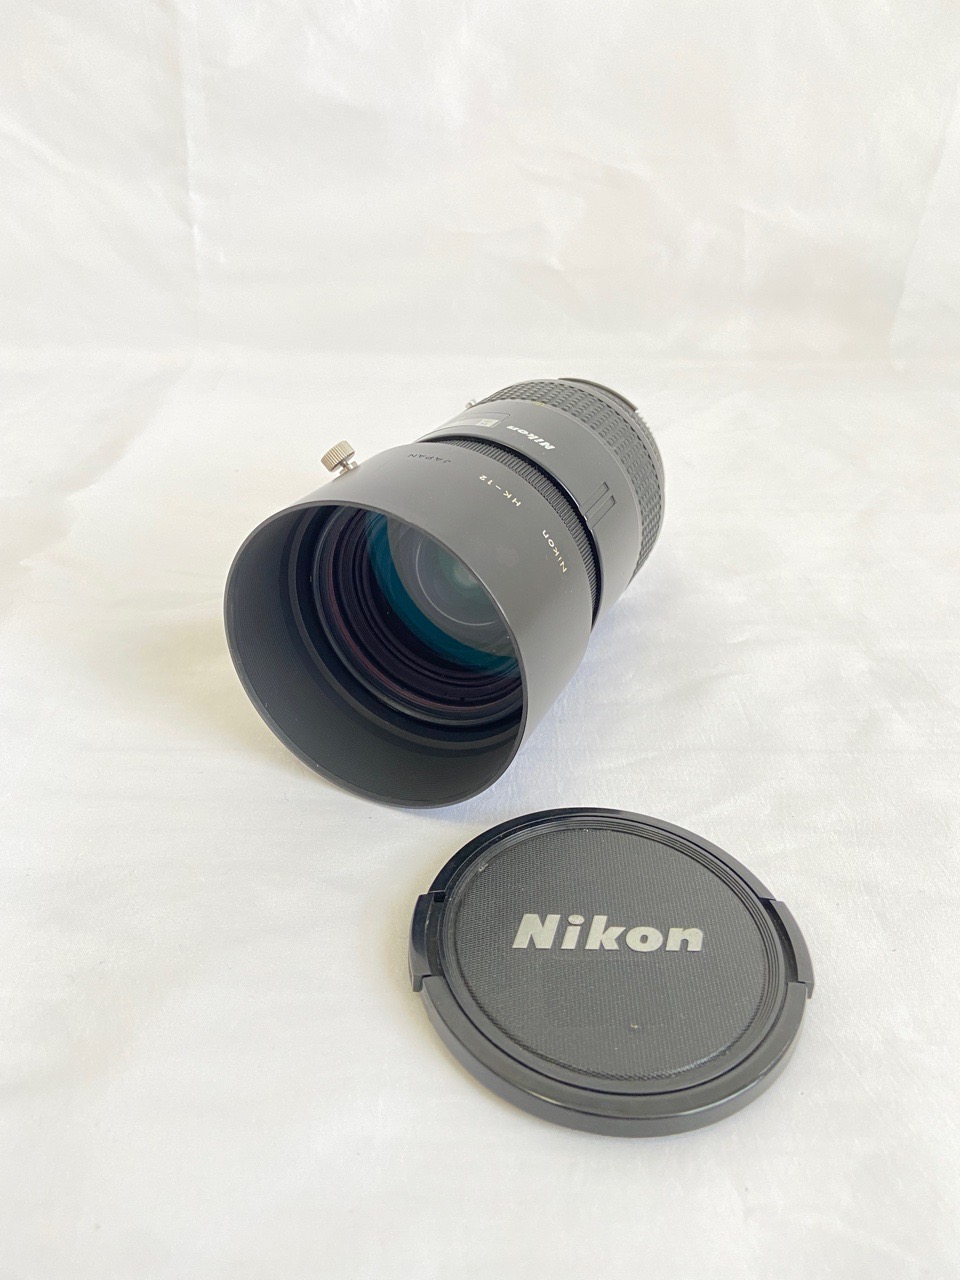 Nikon AF Nikkor 28-85mm F3.5-4.5 一眼 カメラ レンズ ニコン